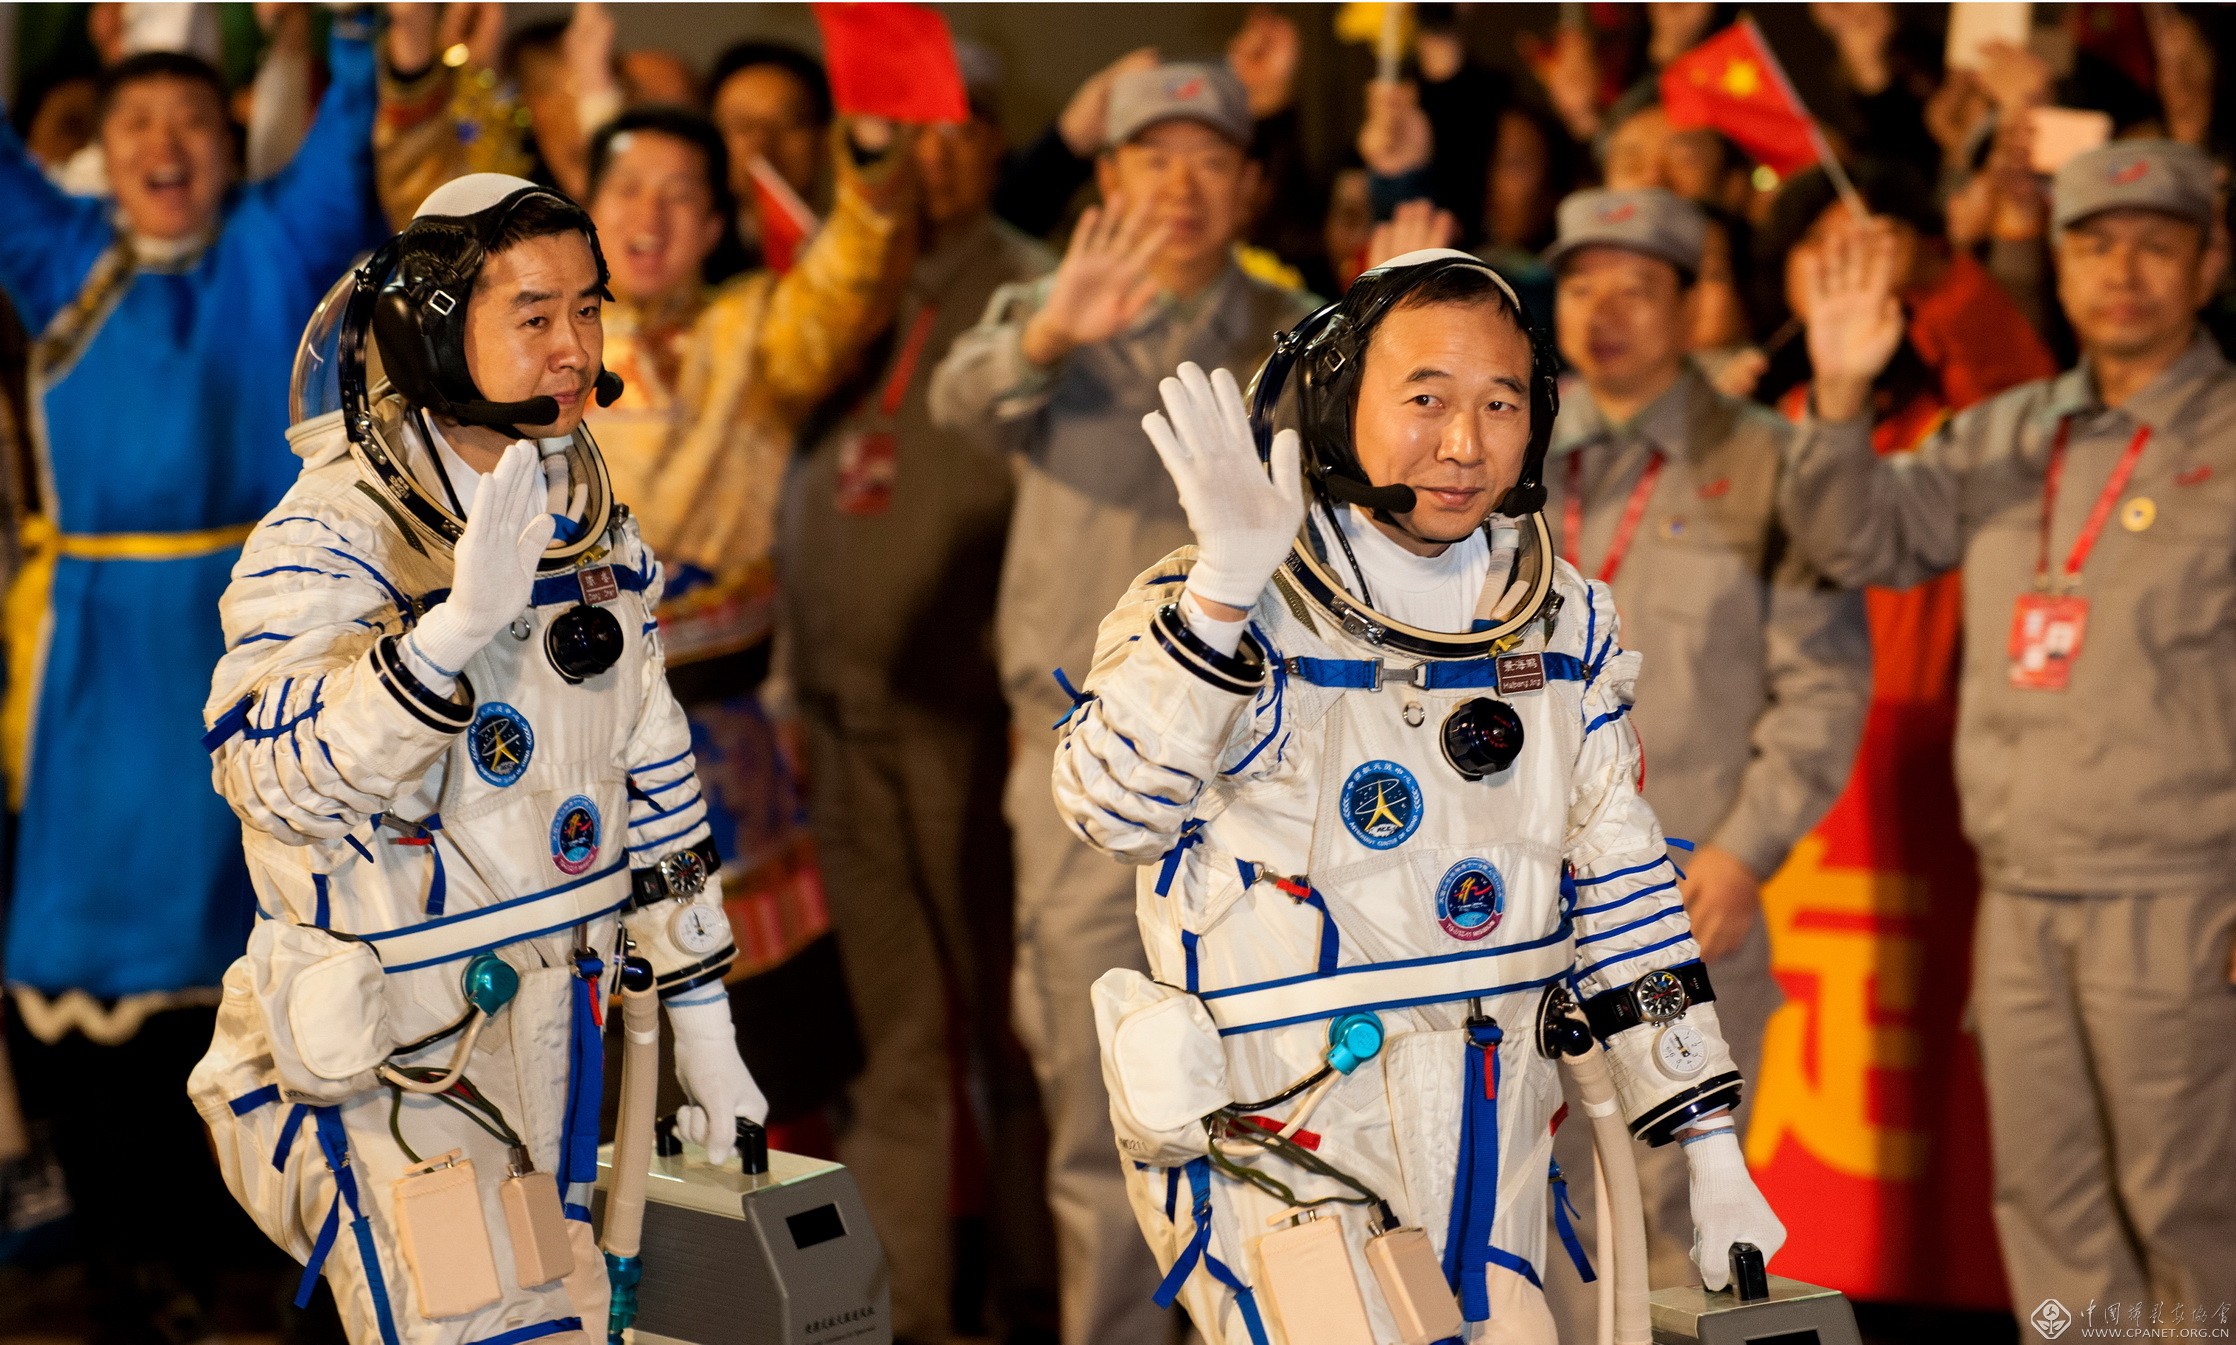 航天英雄杨利伟：我们的目标是星辰大海！_中国载人航天官方网站